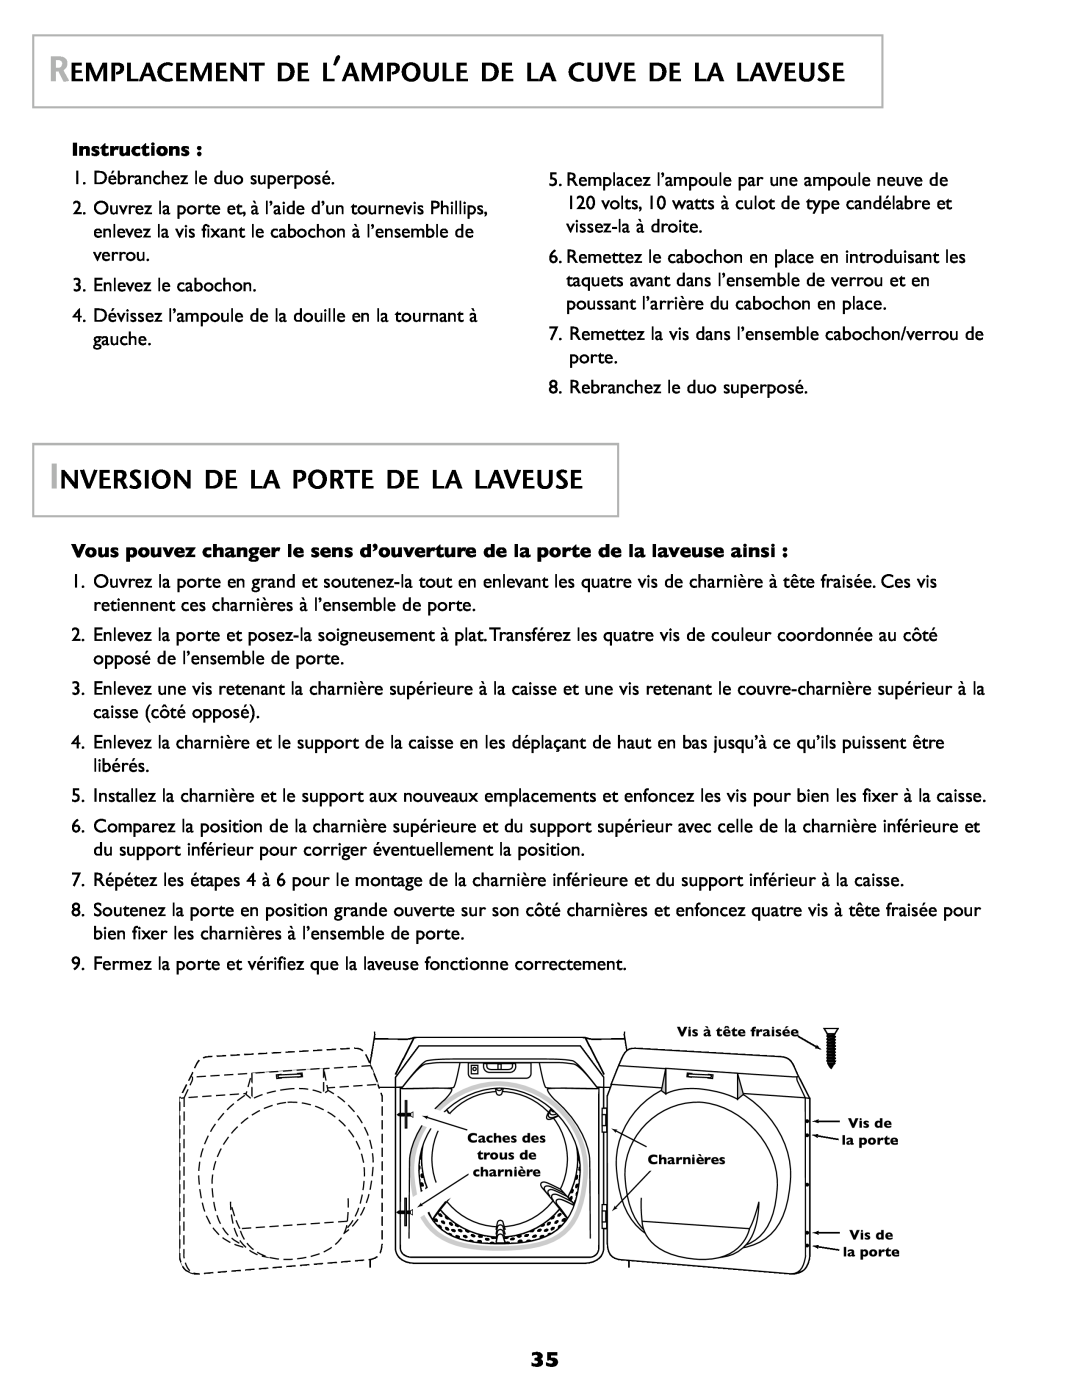 Maytag SL-3 Remplacement De L’Ampoule De La Cuve De La Laveuse, Inversion De La Porte De La Laveuse, Instructions 